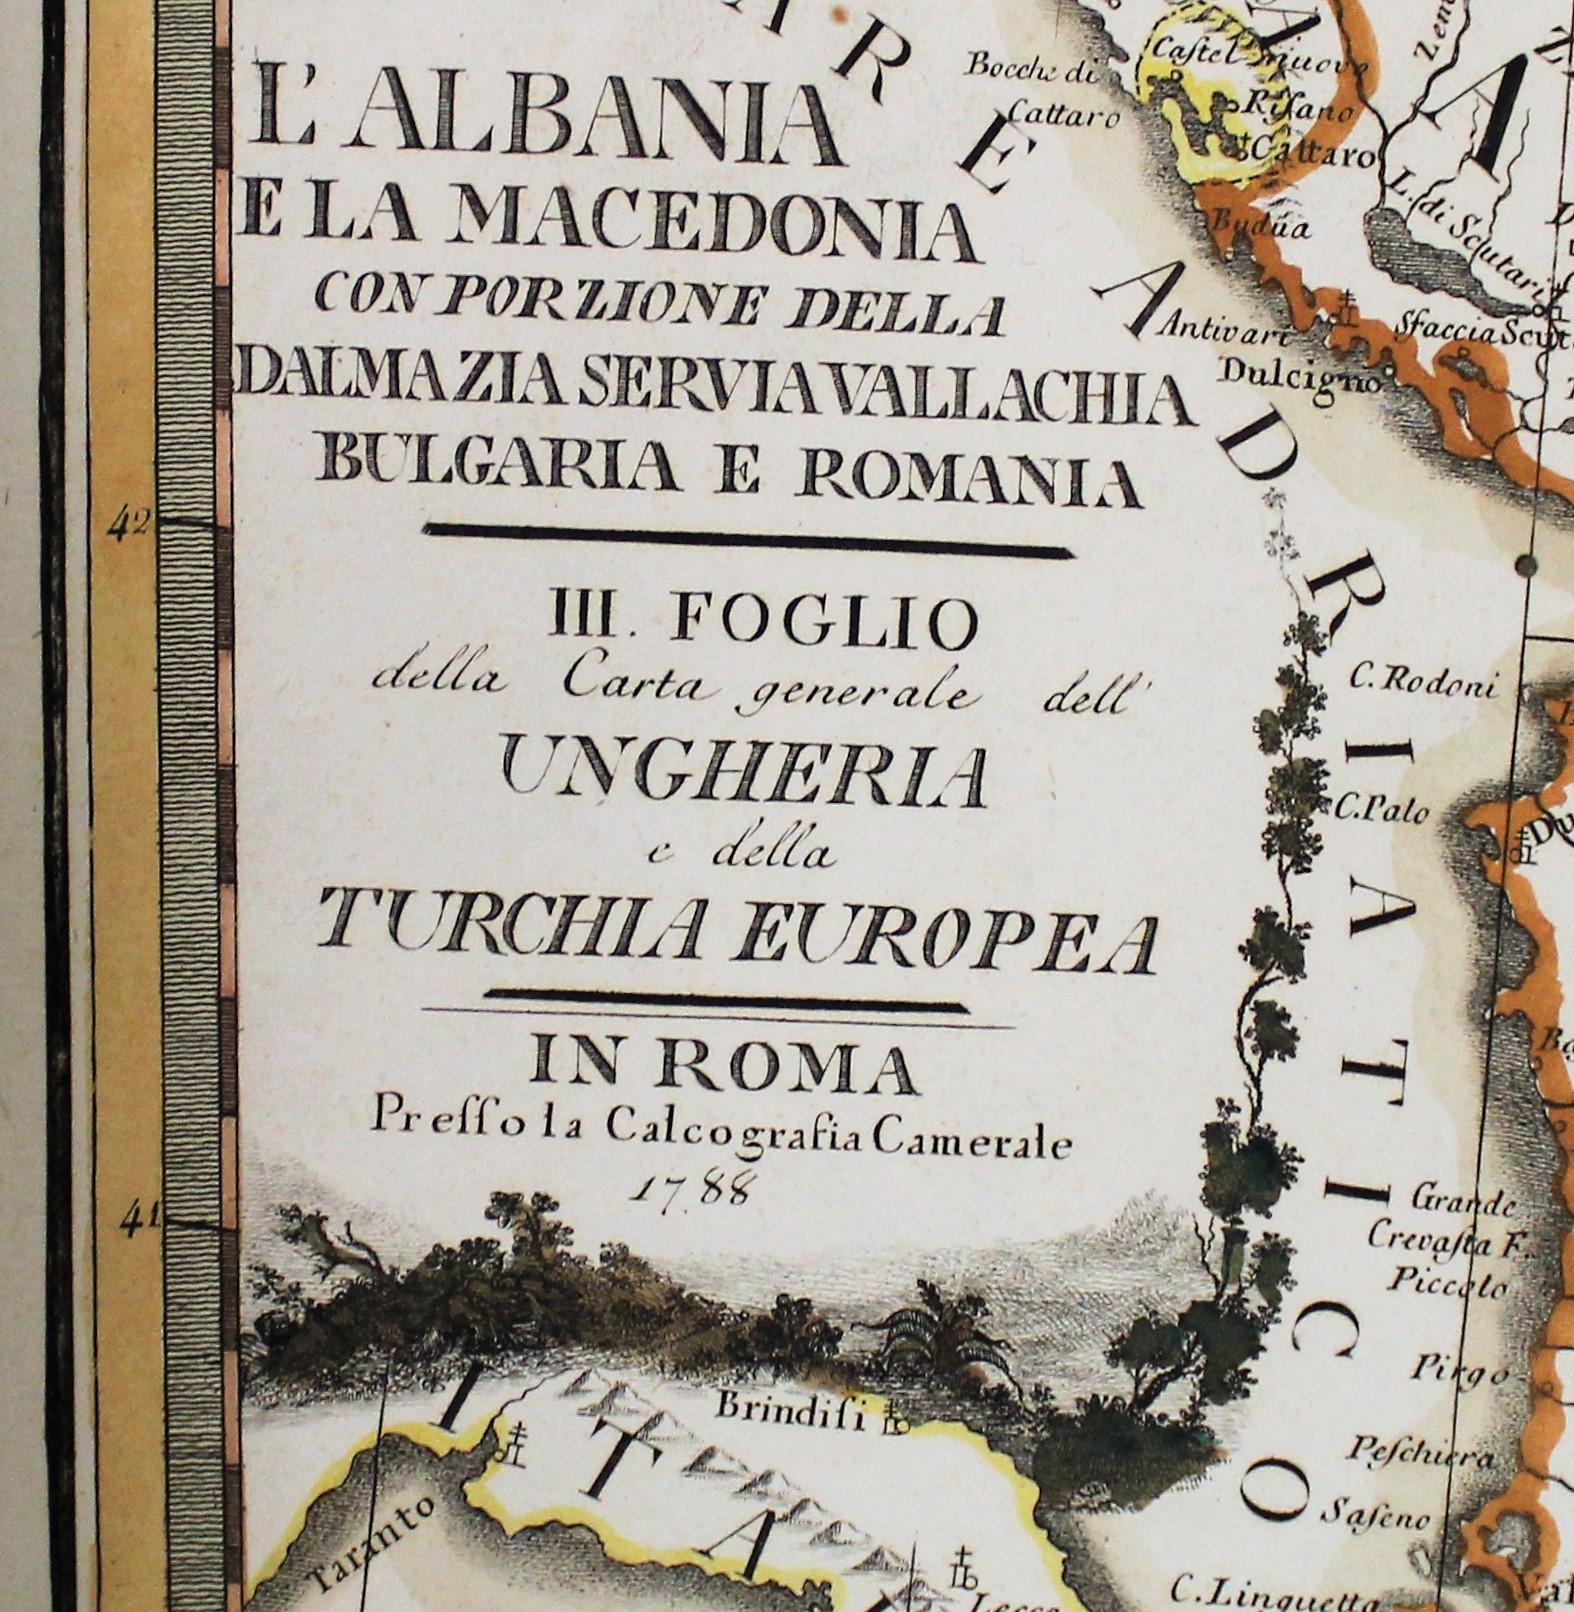 carte du 18e siècle réalisée par le graveur italien Giovanni Maria Cassini (Italie 1745-1824).
Carte des Balkans du Sud : Rome. Impression colorée à la main et gravée sur cuivre réalisée en 1788. Elle comprend la Macédoine et l'Albanie, ainsi que